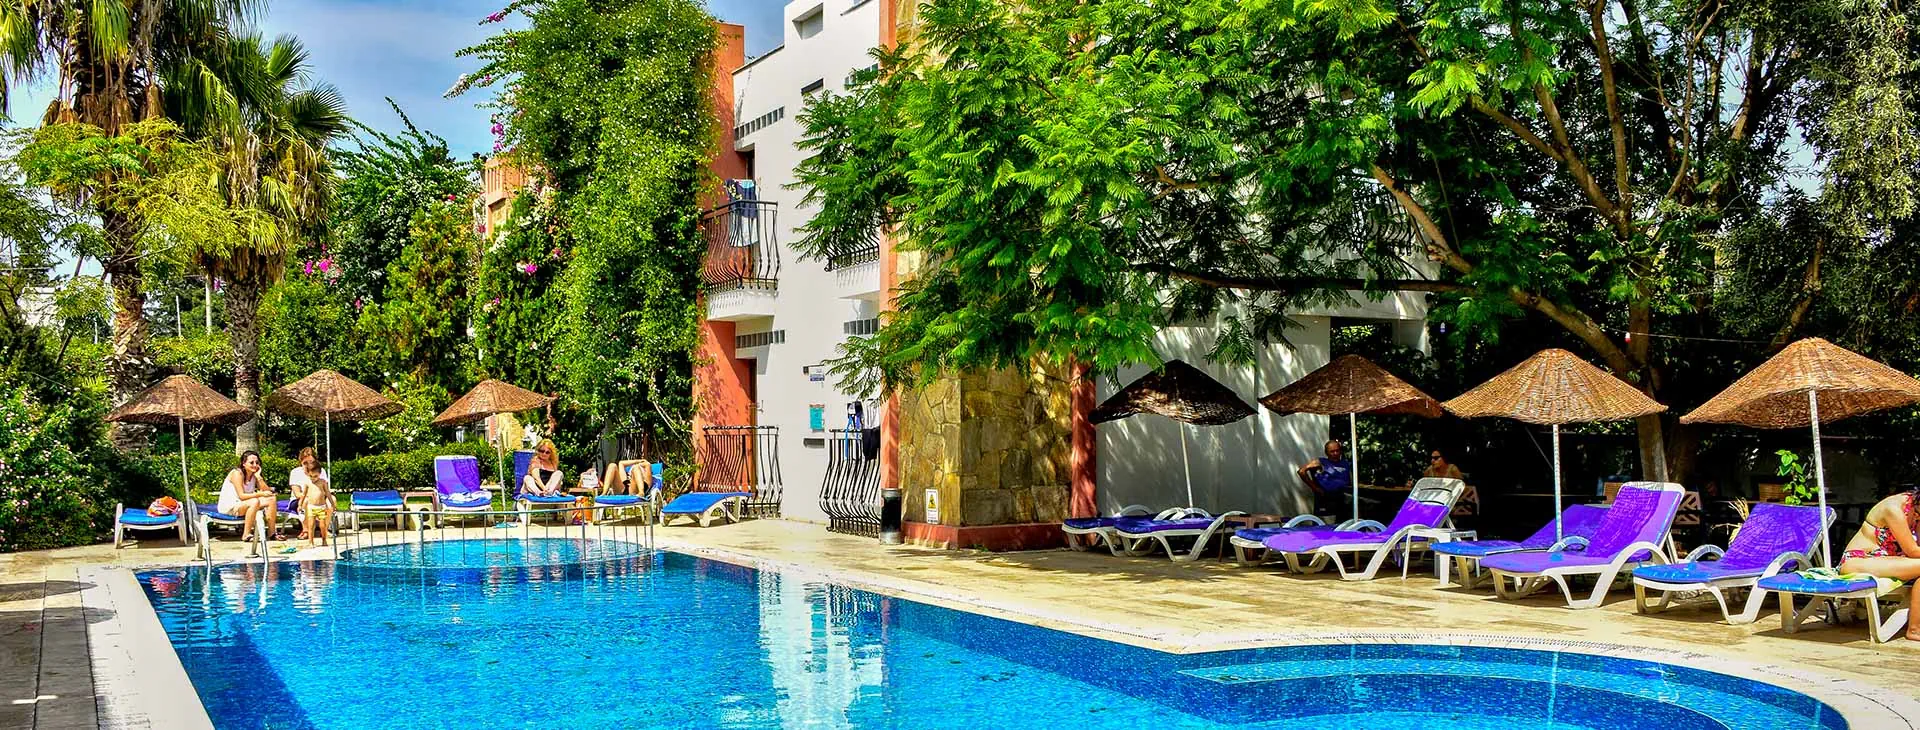 Turcja Bodrum Ortakent Kriss Hotel